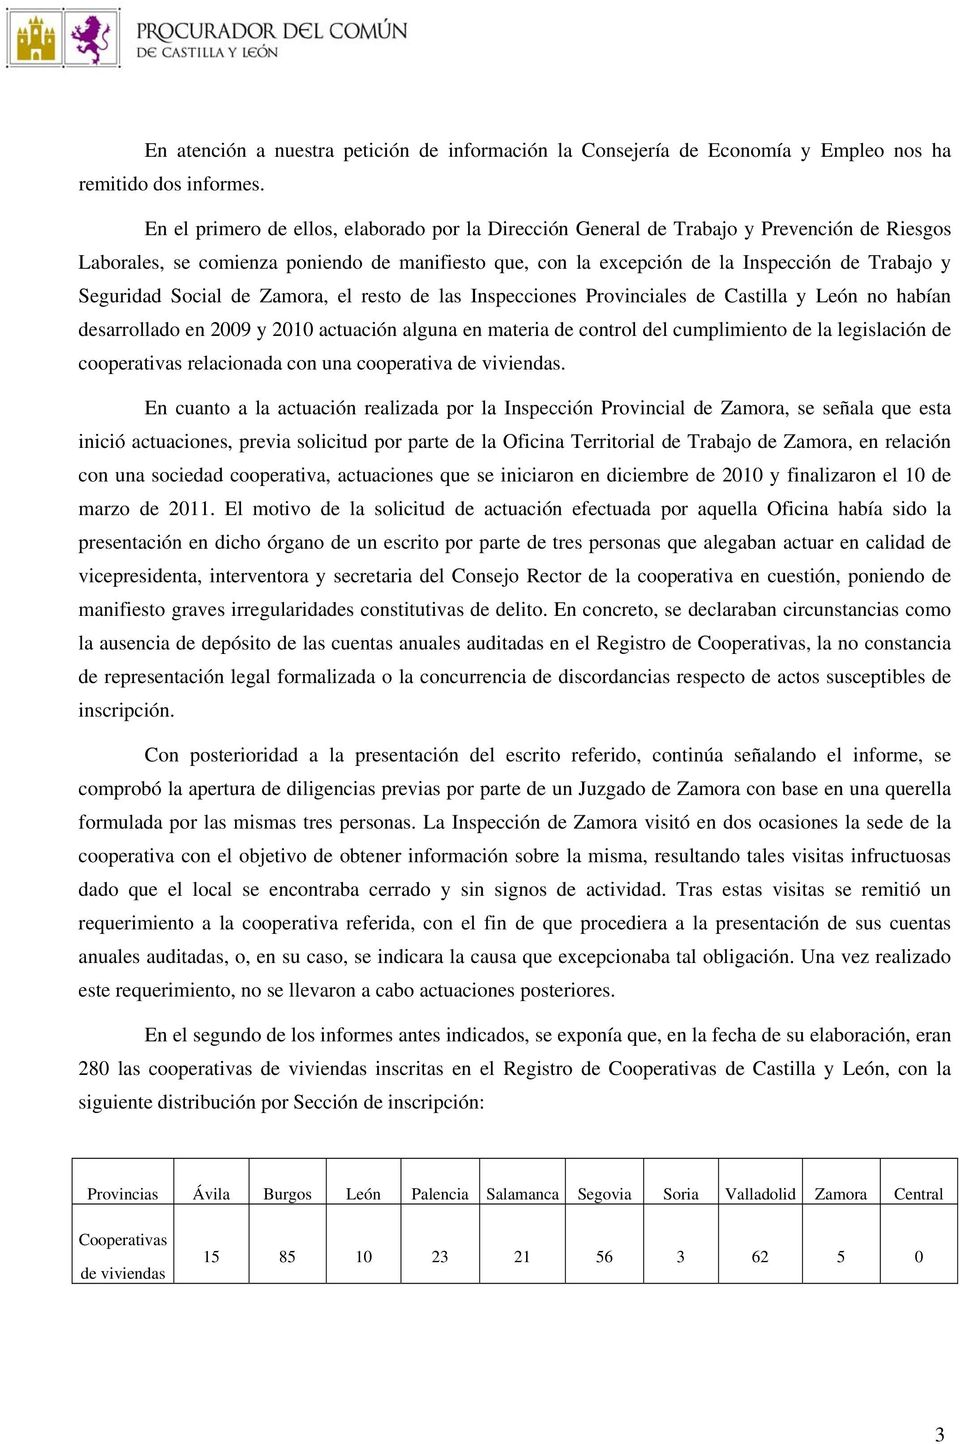 Seguridad Social de Zamora, el resto de las Inspecciones Provinciales de Castilla y León no habían desarrollado en 2009 y 2010 actuación alguna en materia de control del cumplimiento de la